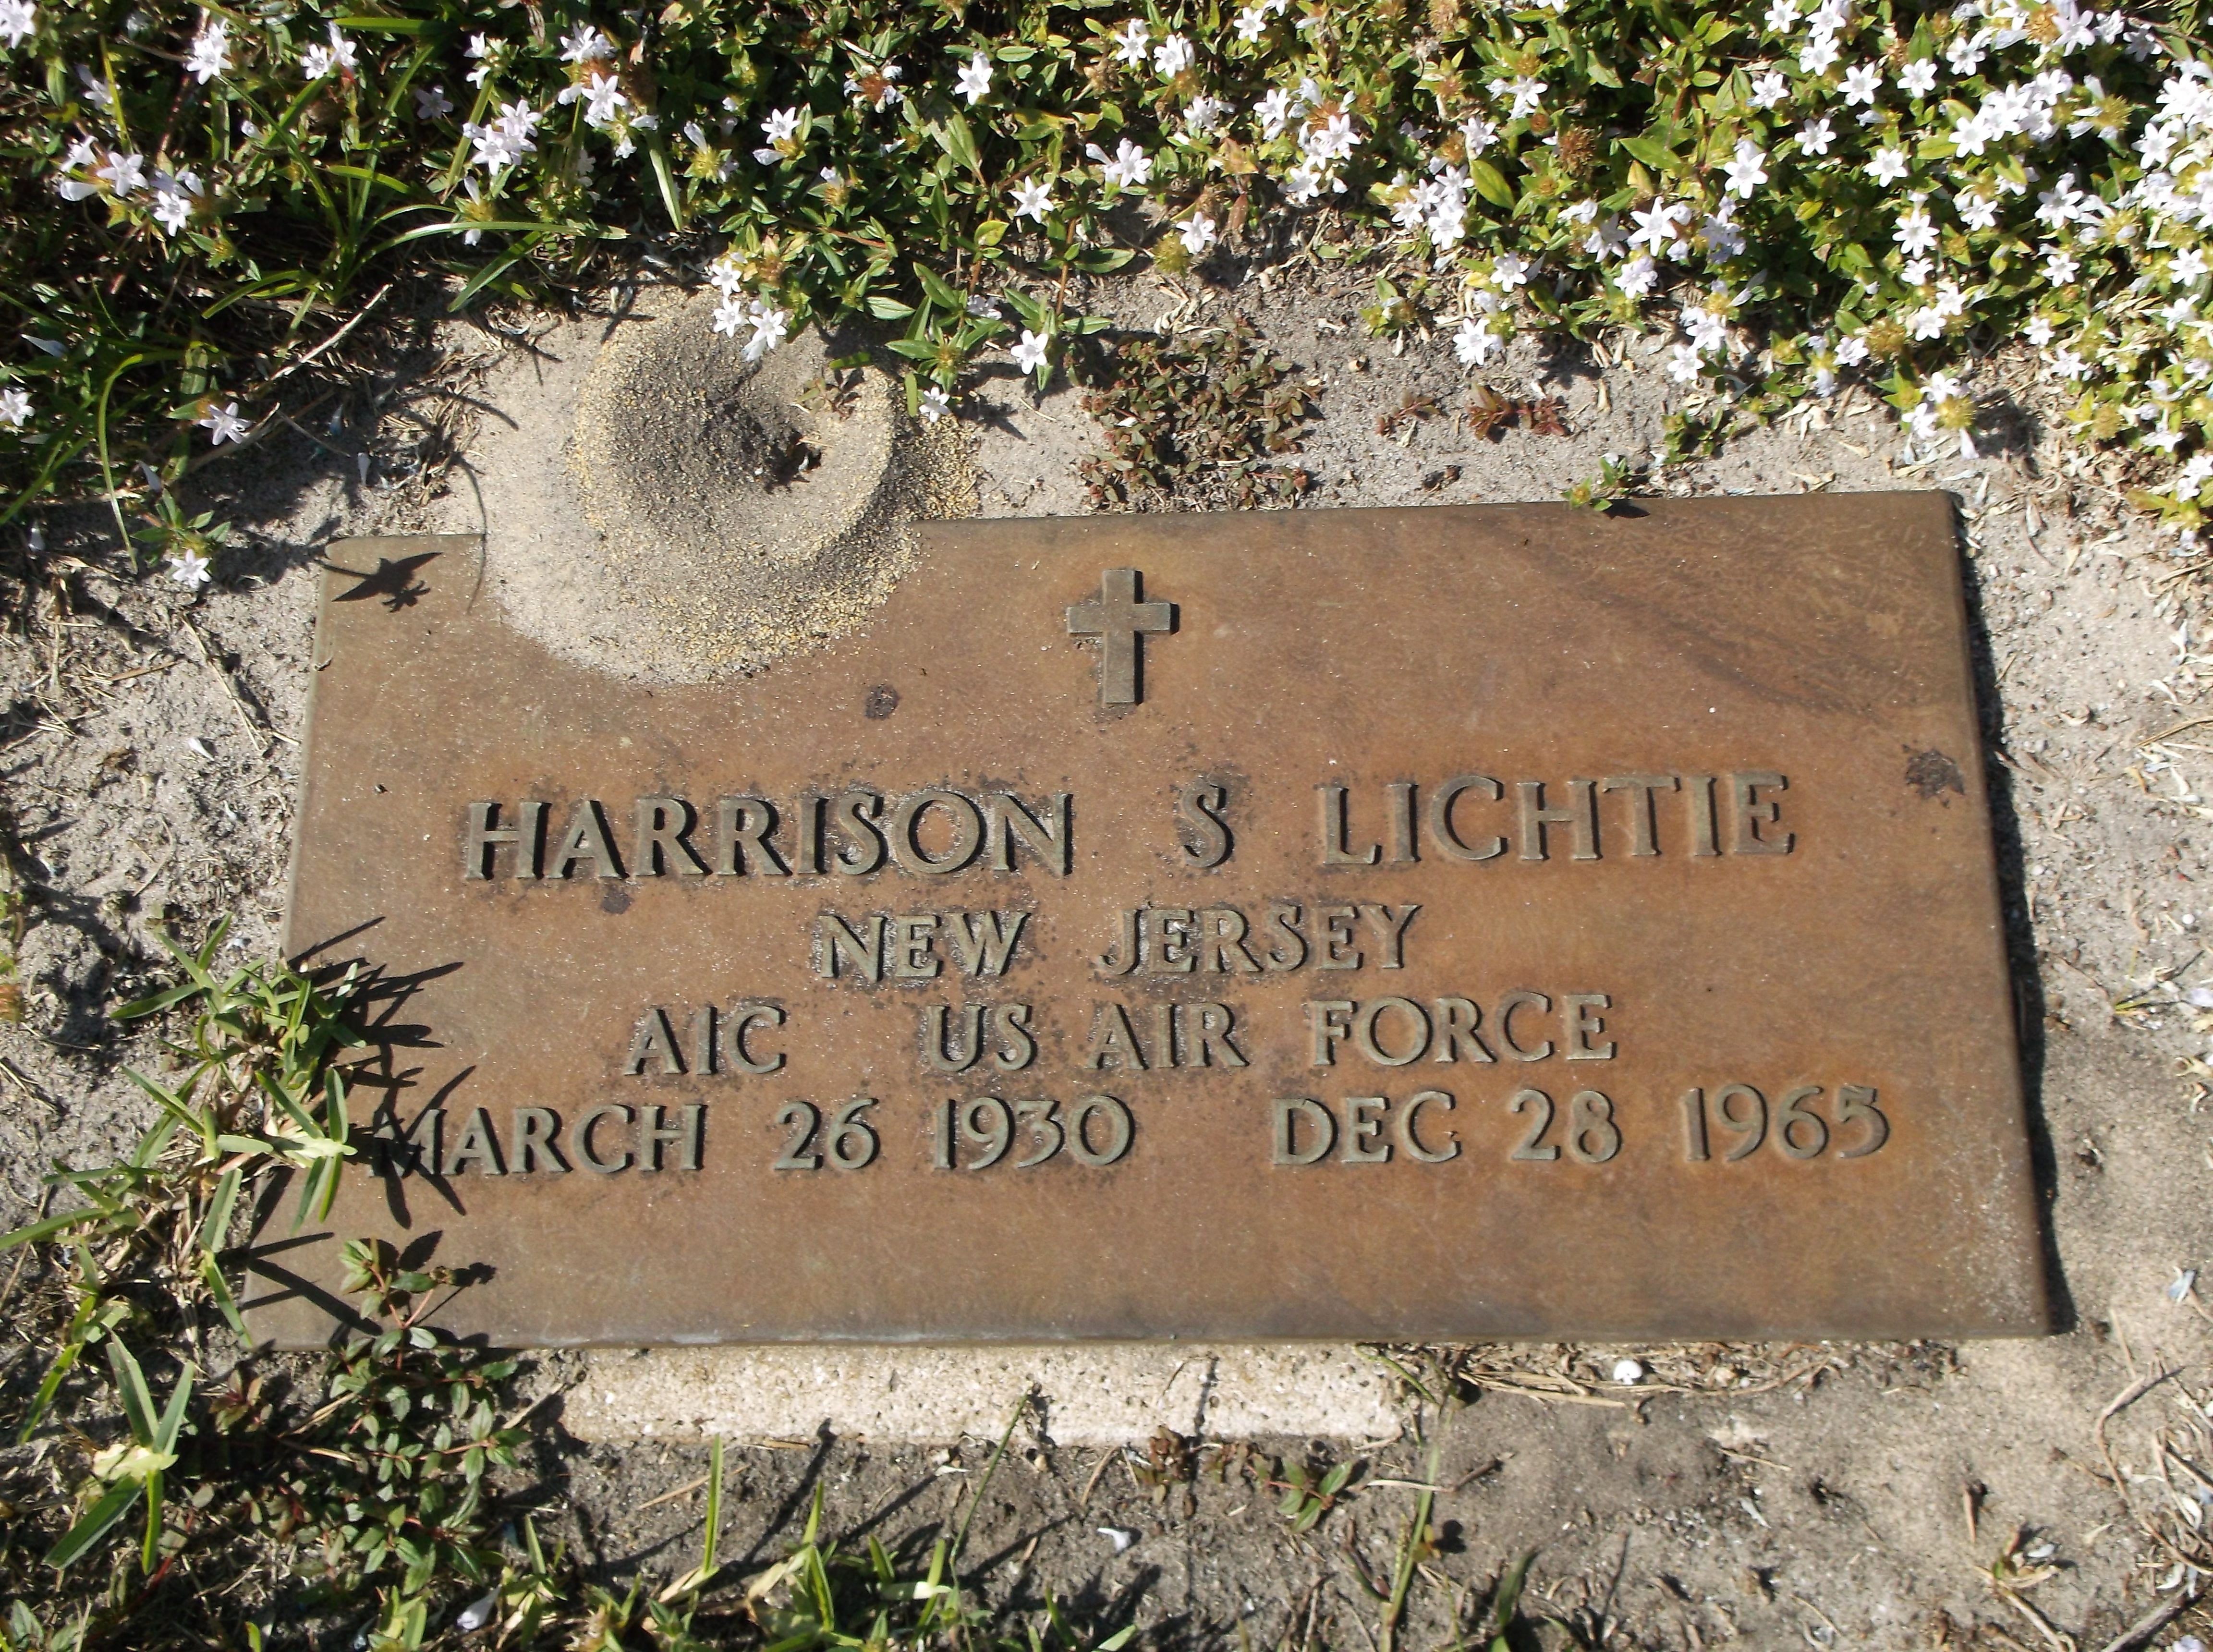 Harrison S Lichtie